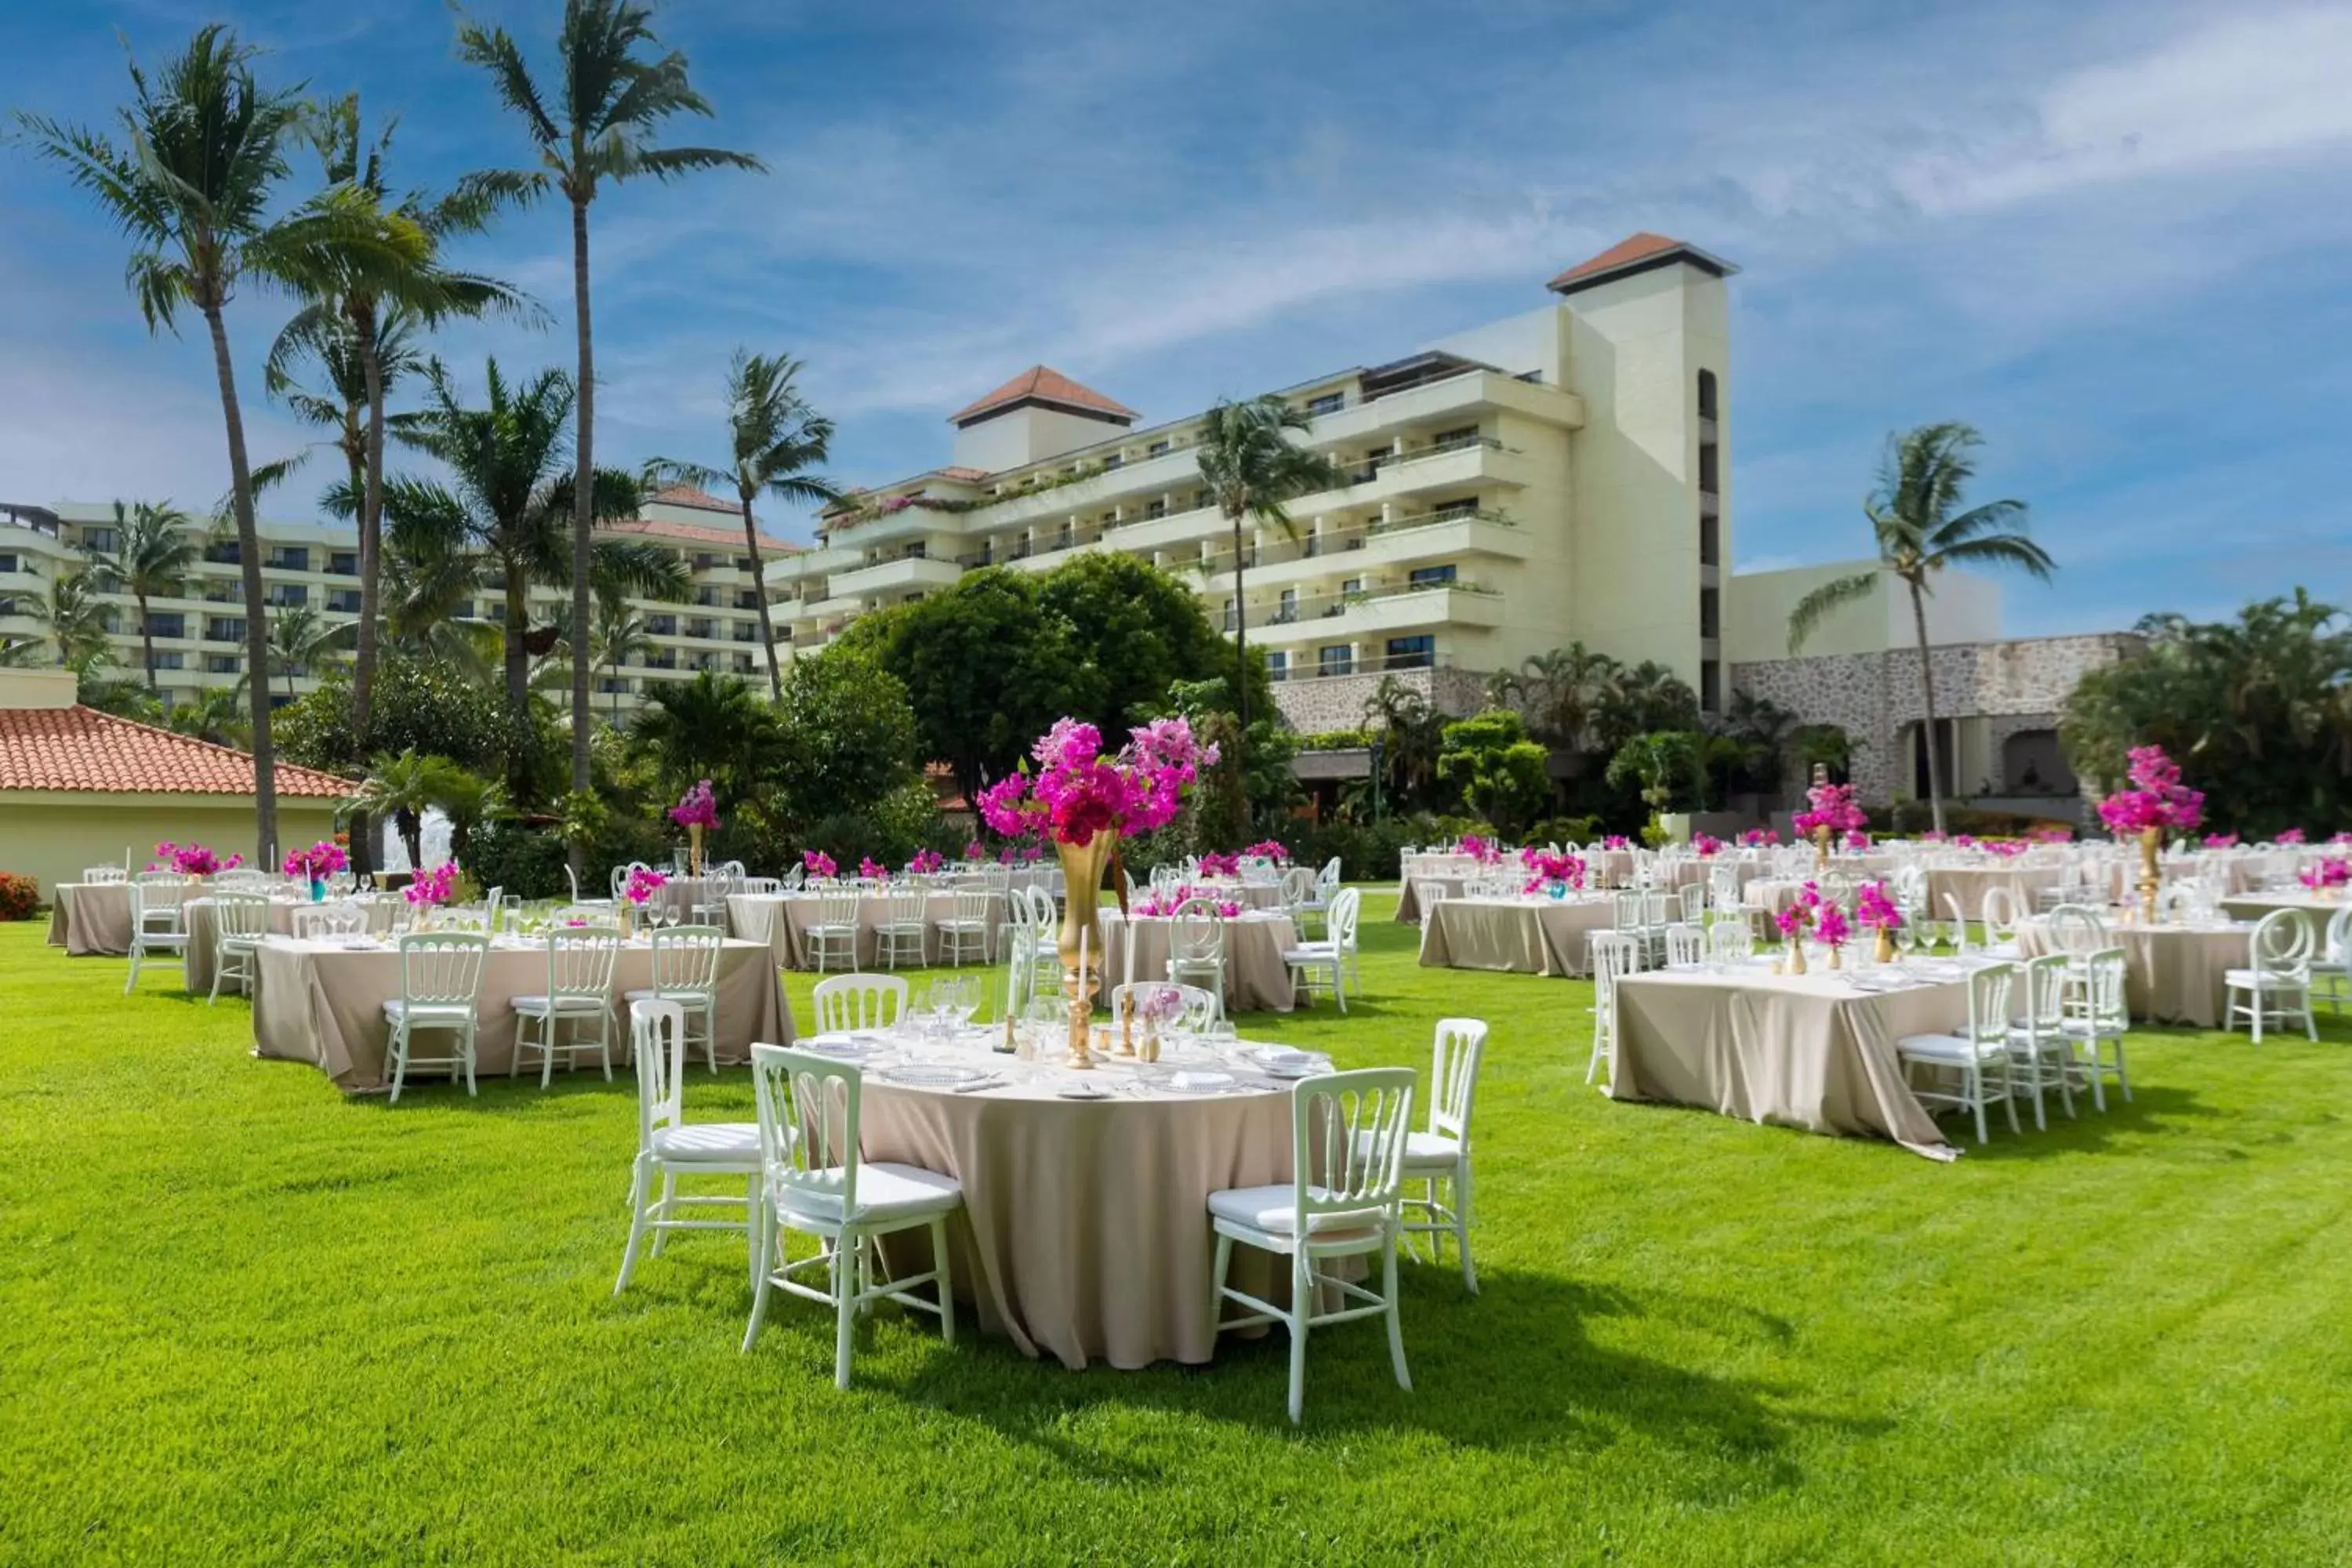 Meeting/conference room, Banquet Facilities in Marriott Puerto Vallarta Resort & Spa